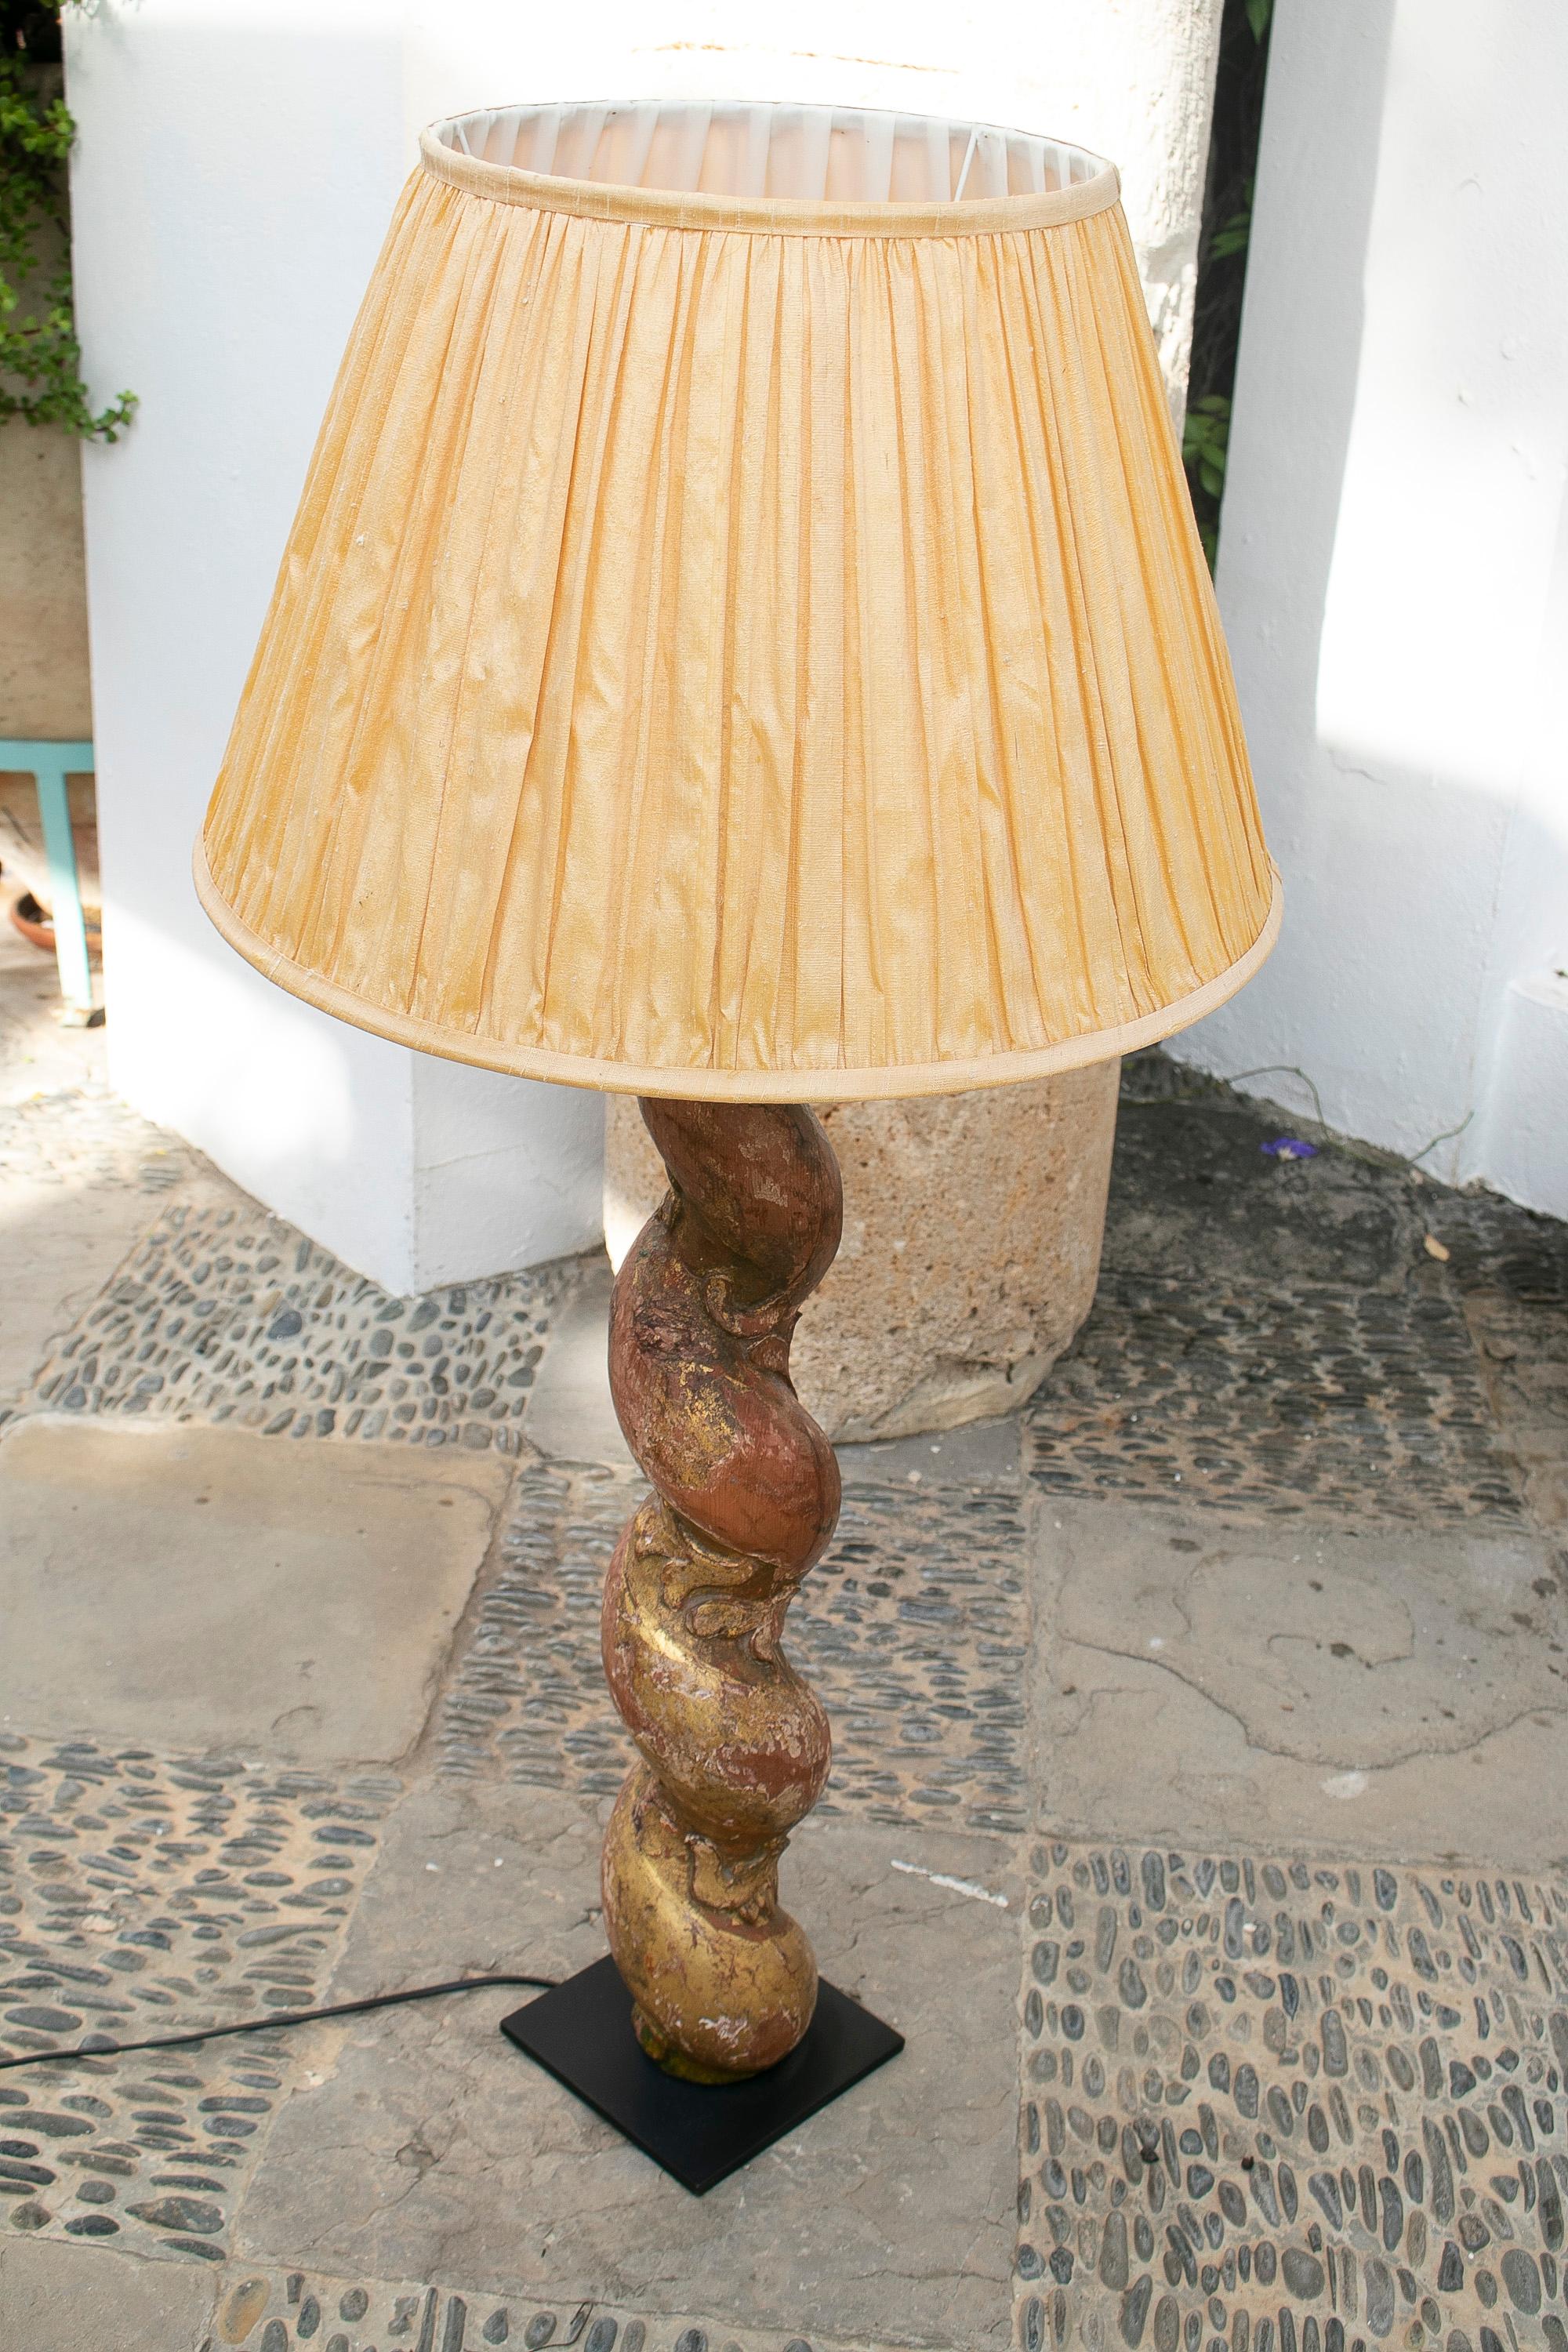 lampe de table en bois polychrome du 18e siècle de style solomonique

Dimensions avec abat-jour : 103x50cm
Abat-jour non compris dans le prix.